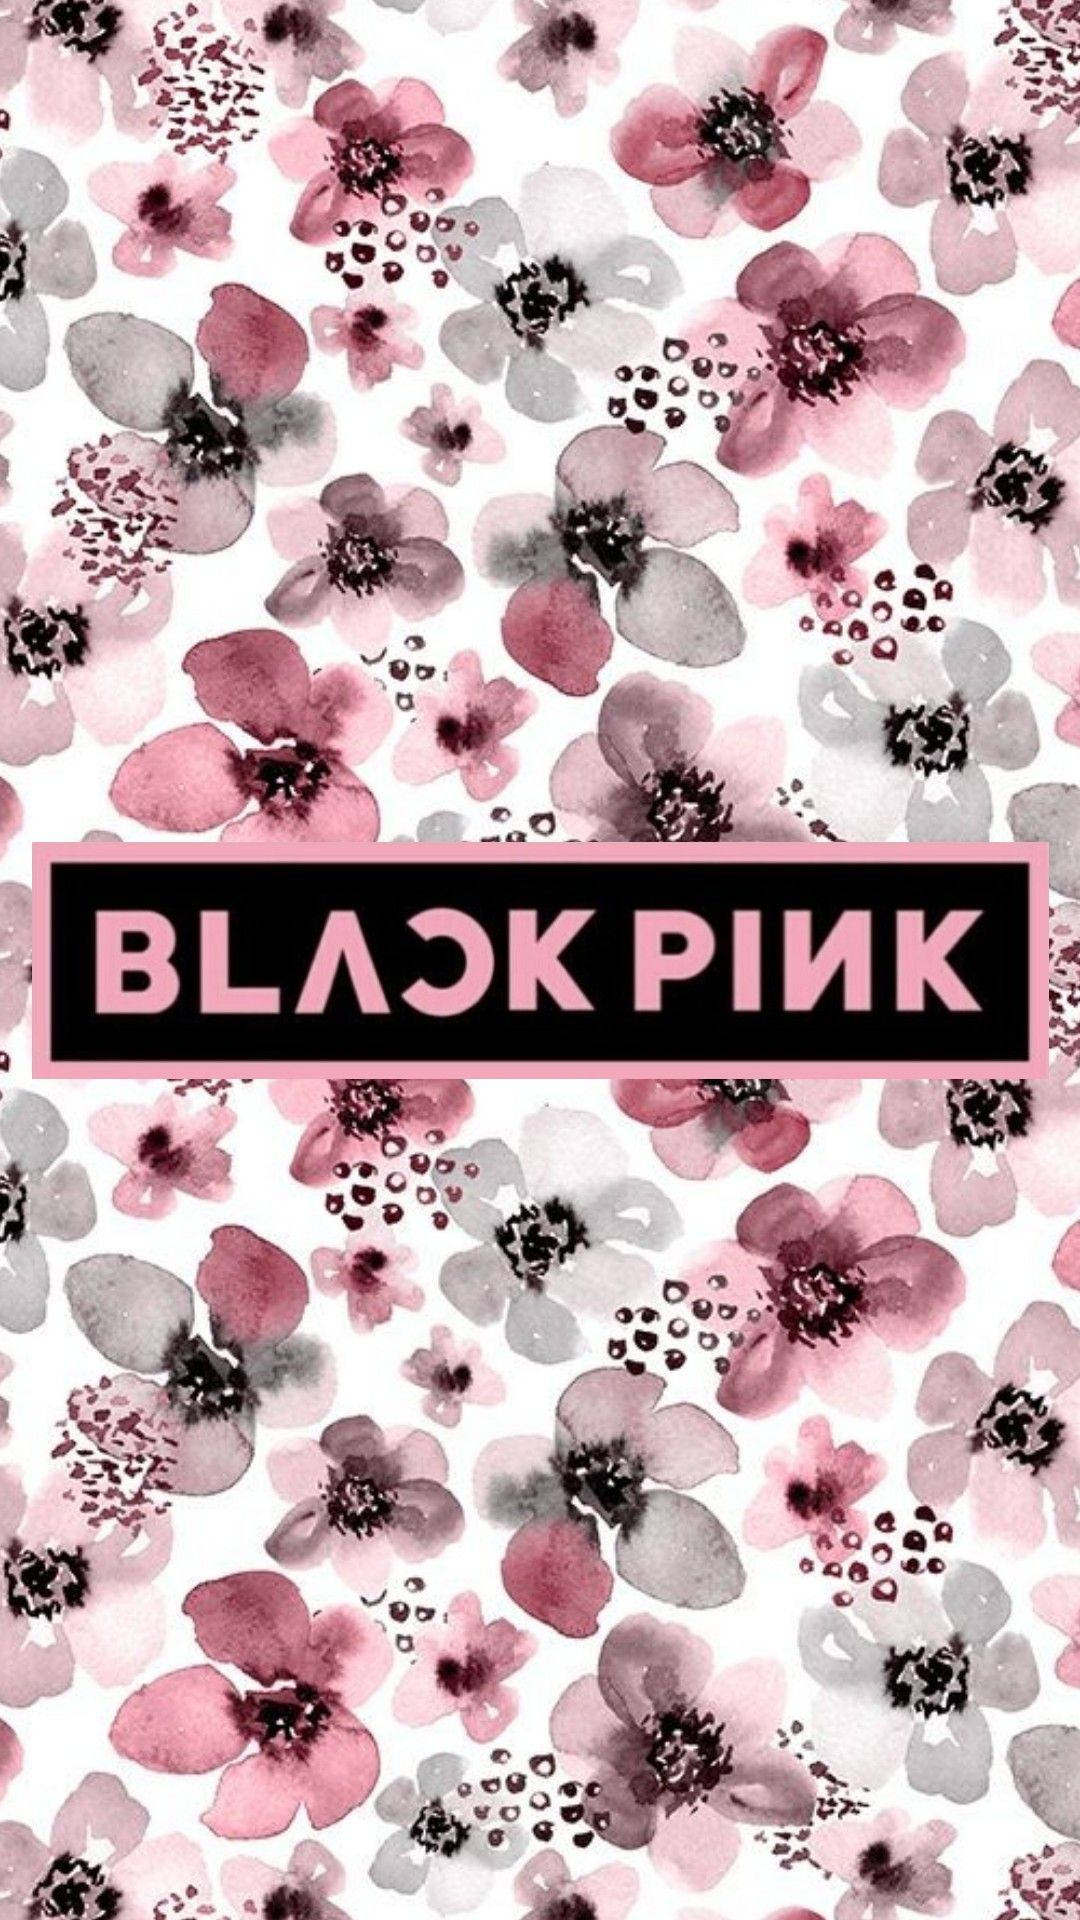 Blackpink Logo Over Black And Pink Flowers Wallpaper